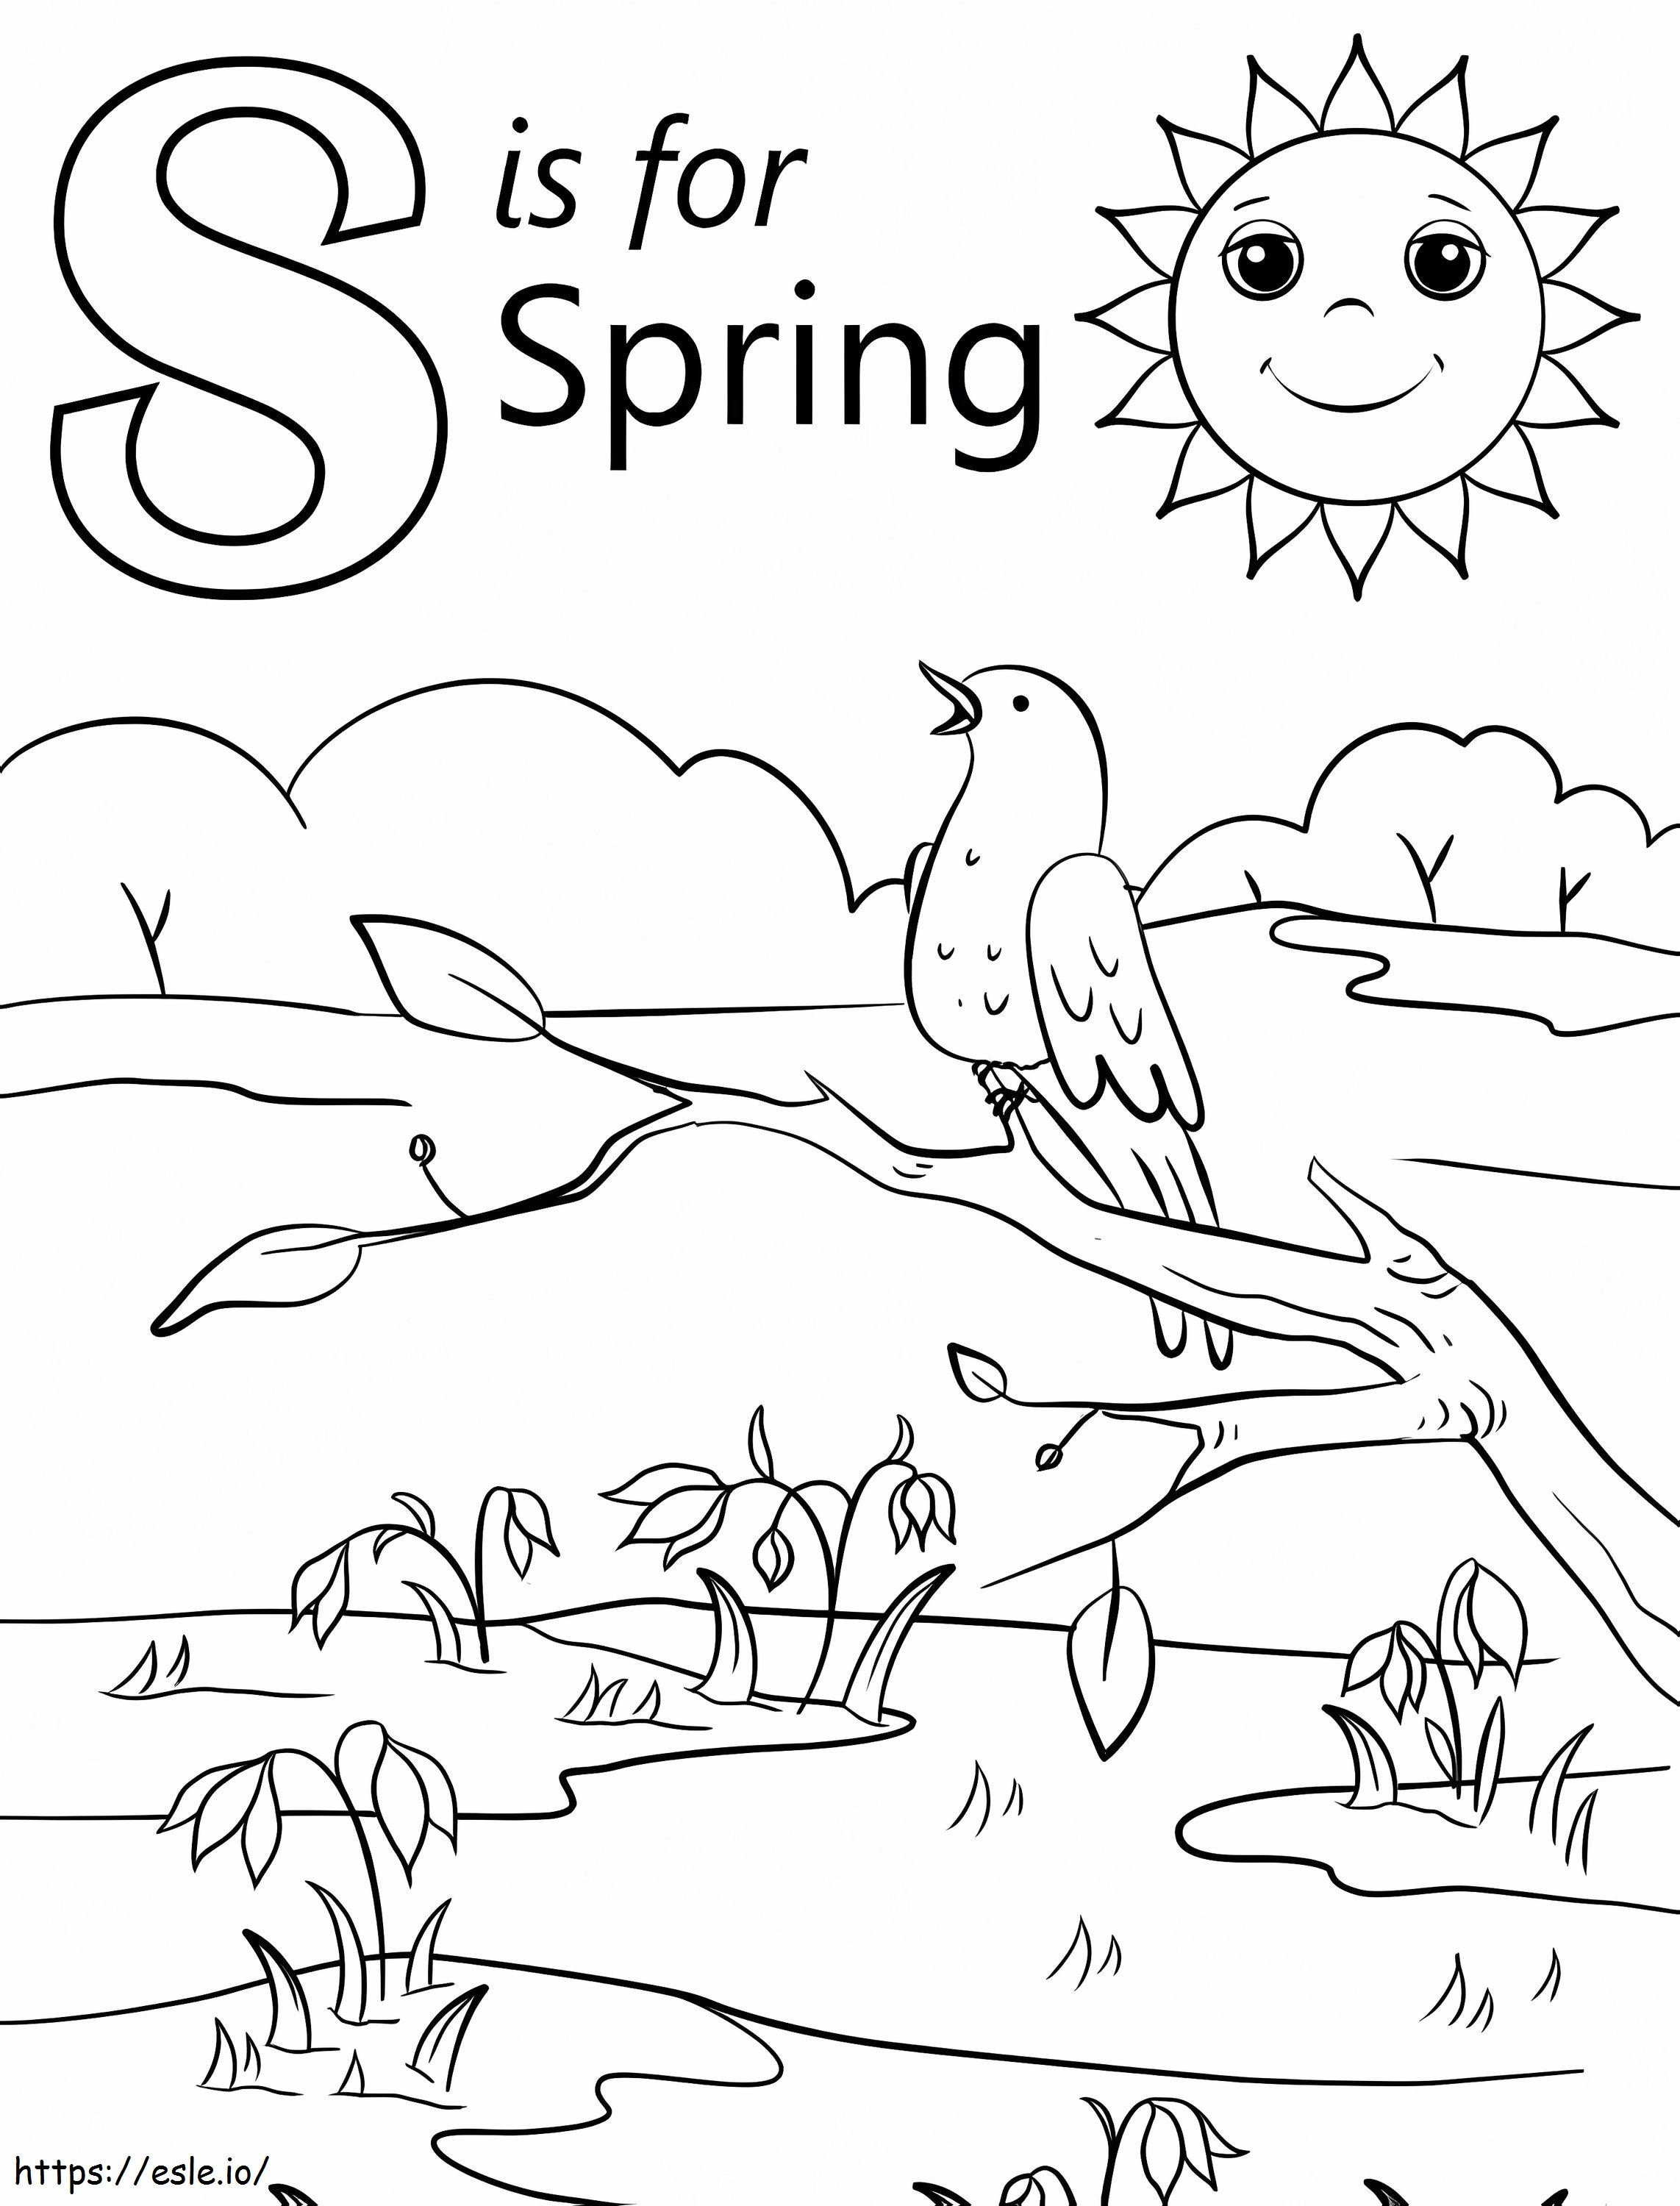 Frühlingsbuchstabe S ausmalbilder